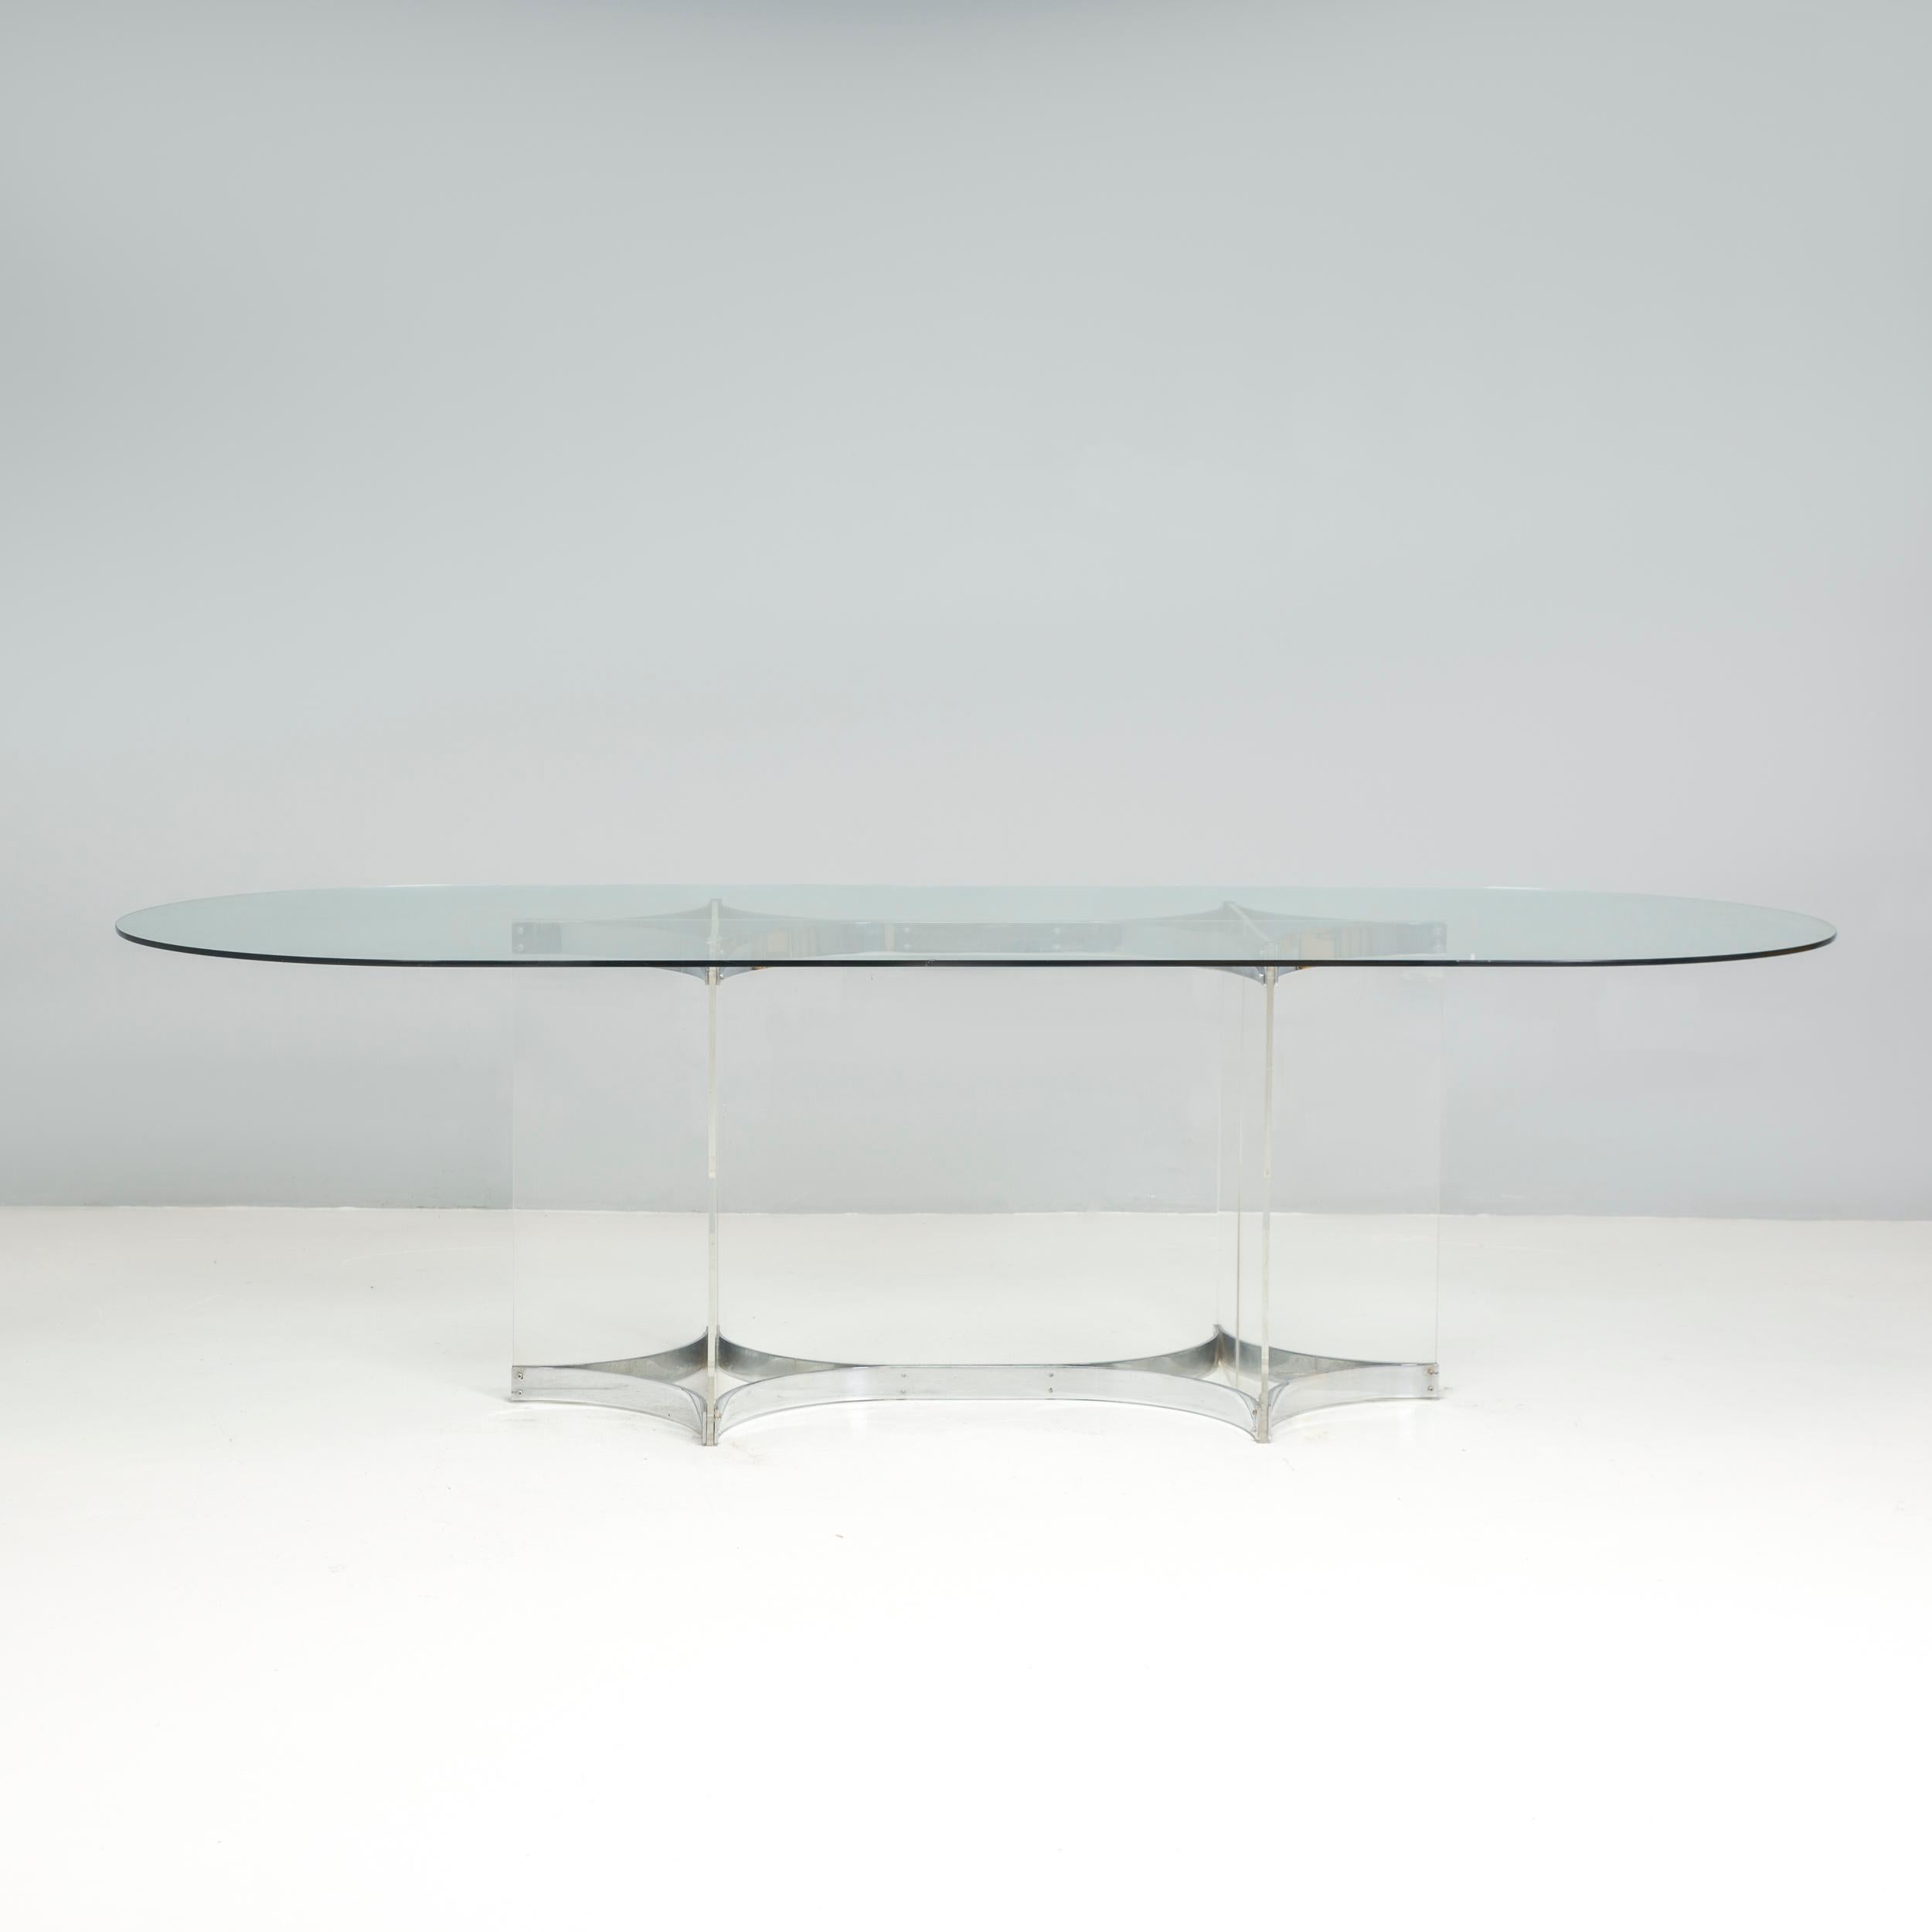 Remarquable table basse italienne de style moderne du milieu du siècle par Alessandro Albrizzi, en acier chromé, avec des formes courbes sculpturales supportant des feuilles de verre acrylique imbriquées les unes dans les autres. 

Base très